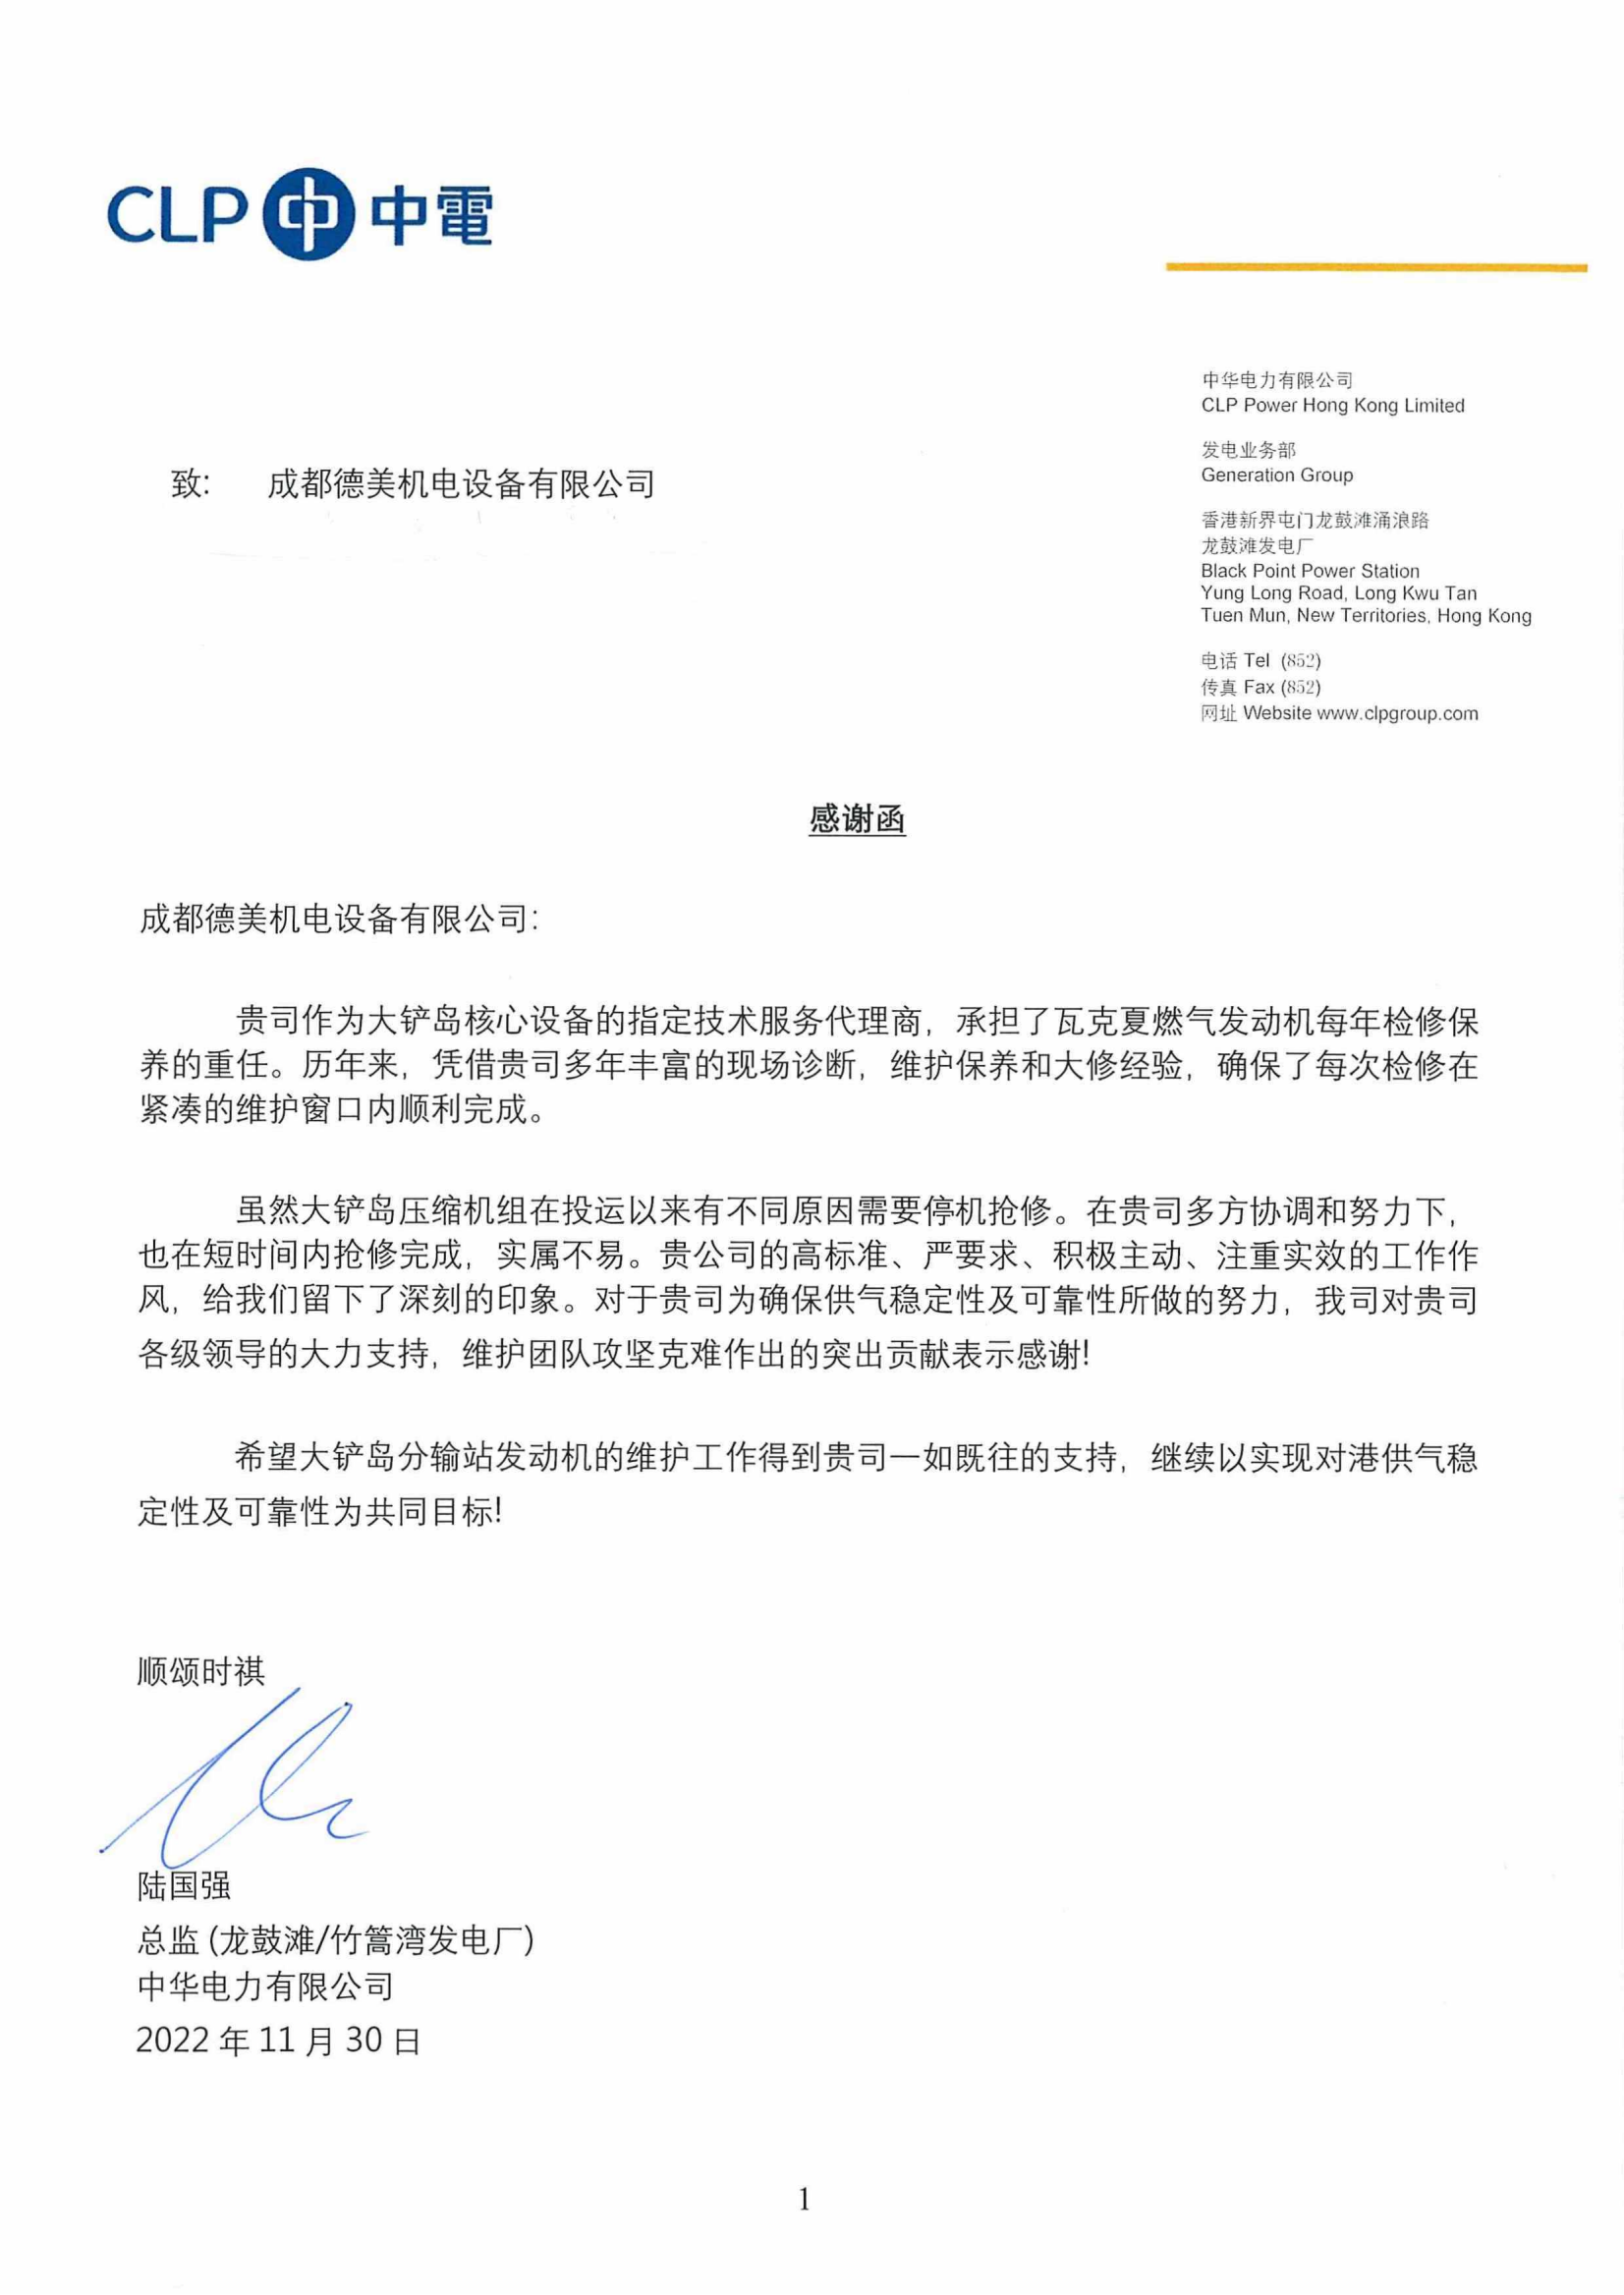 成都德美收到香港中华电力有限公司发来感谢函